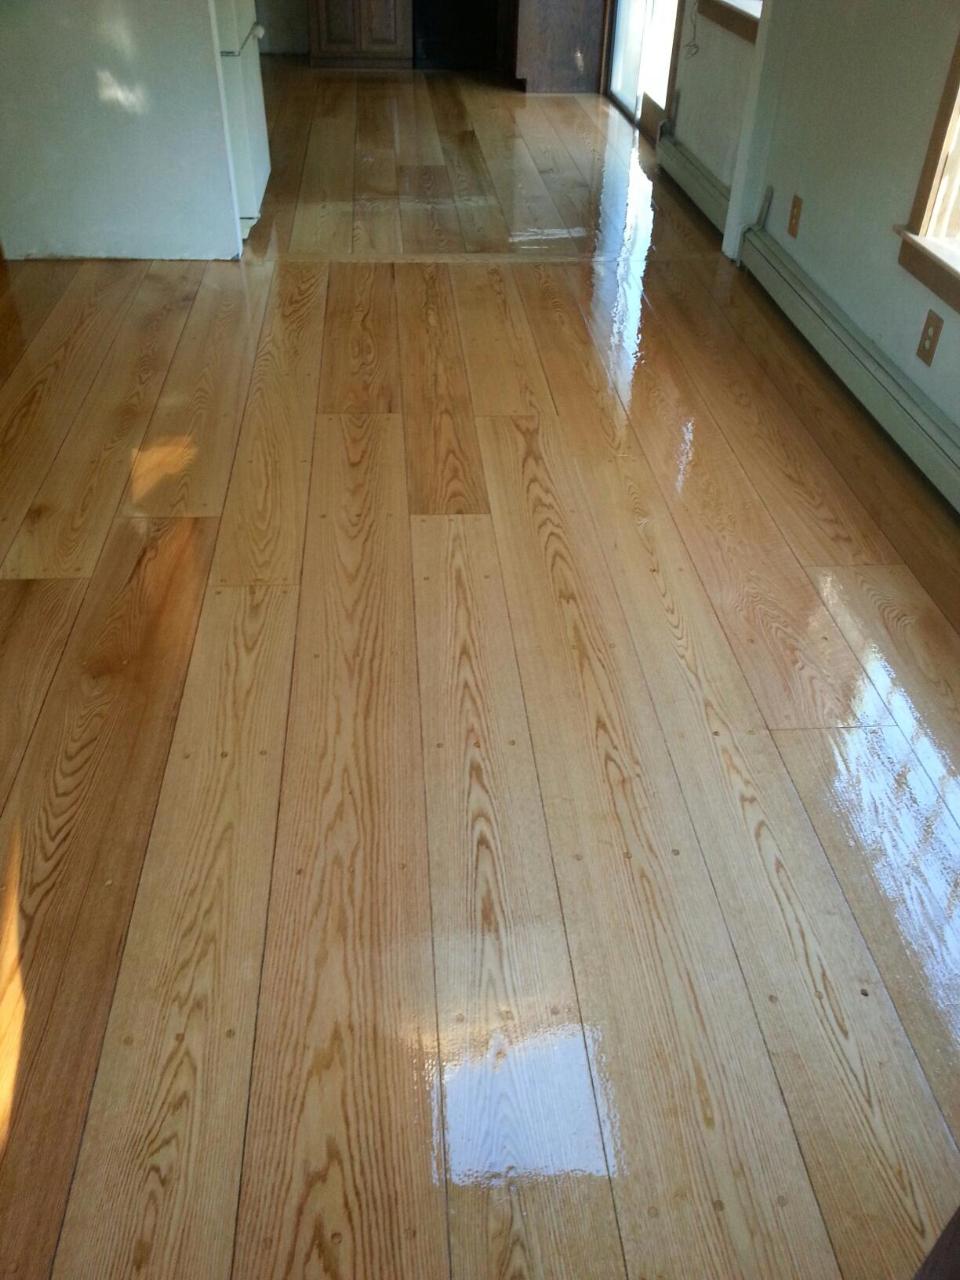 7 Pegged Red Oak Hardwood Floors In, Pegged Hardwood Flooring